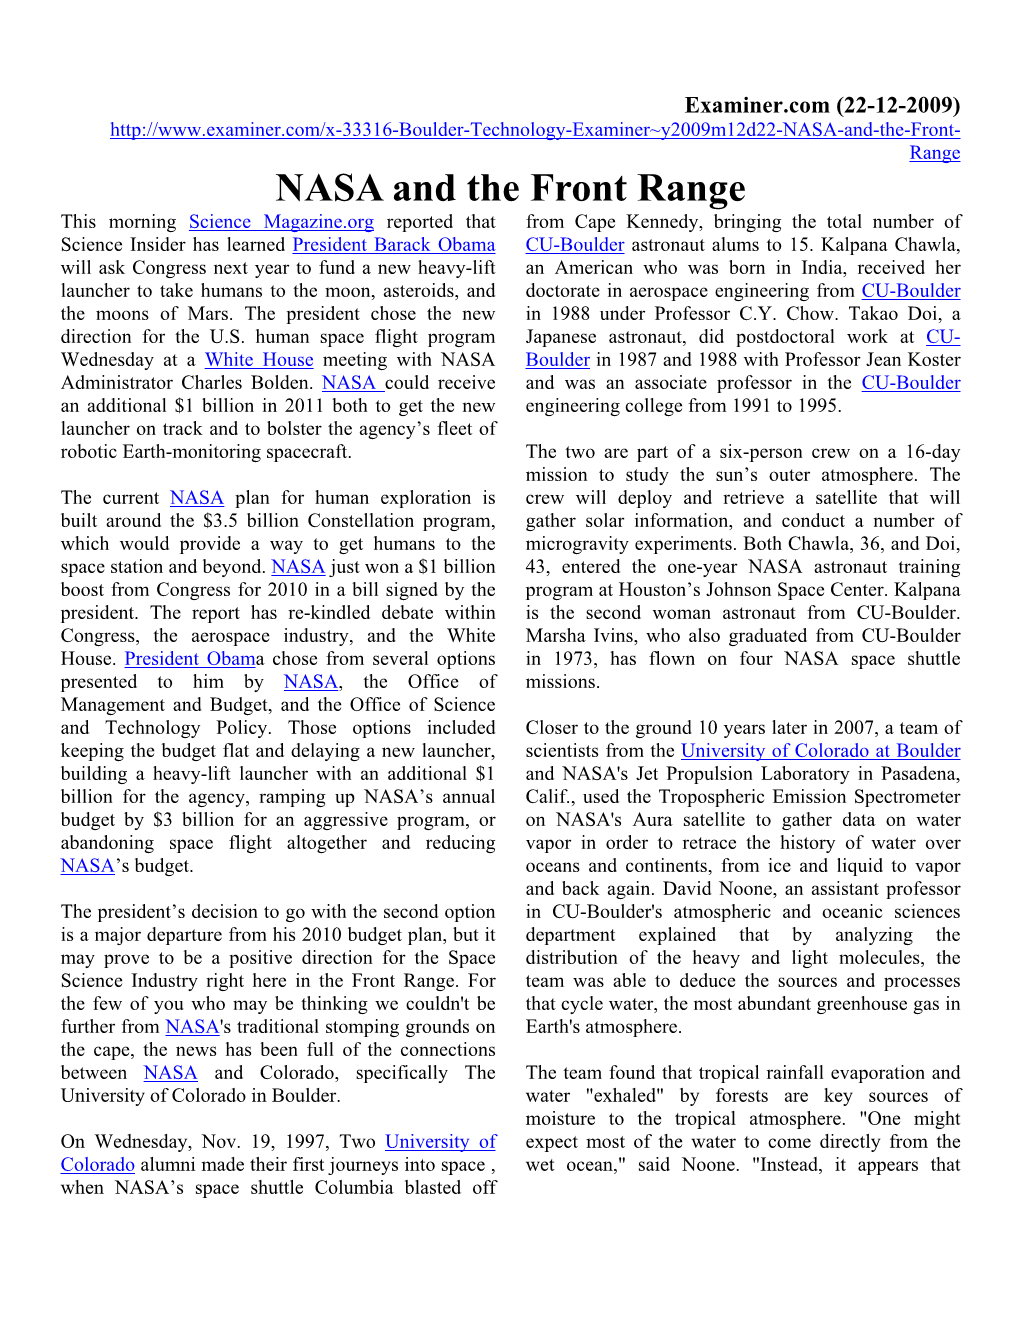 NASA and the Front Range